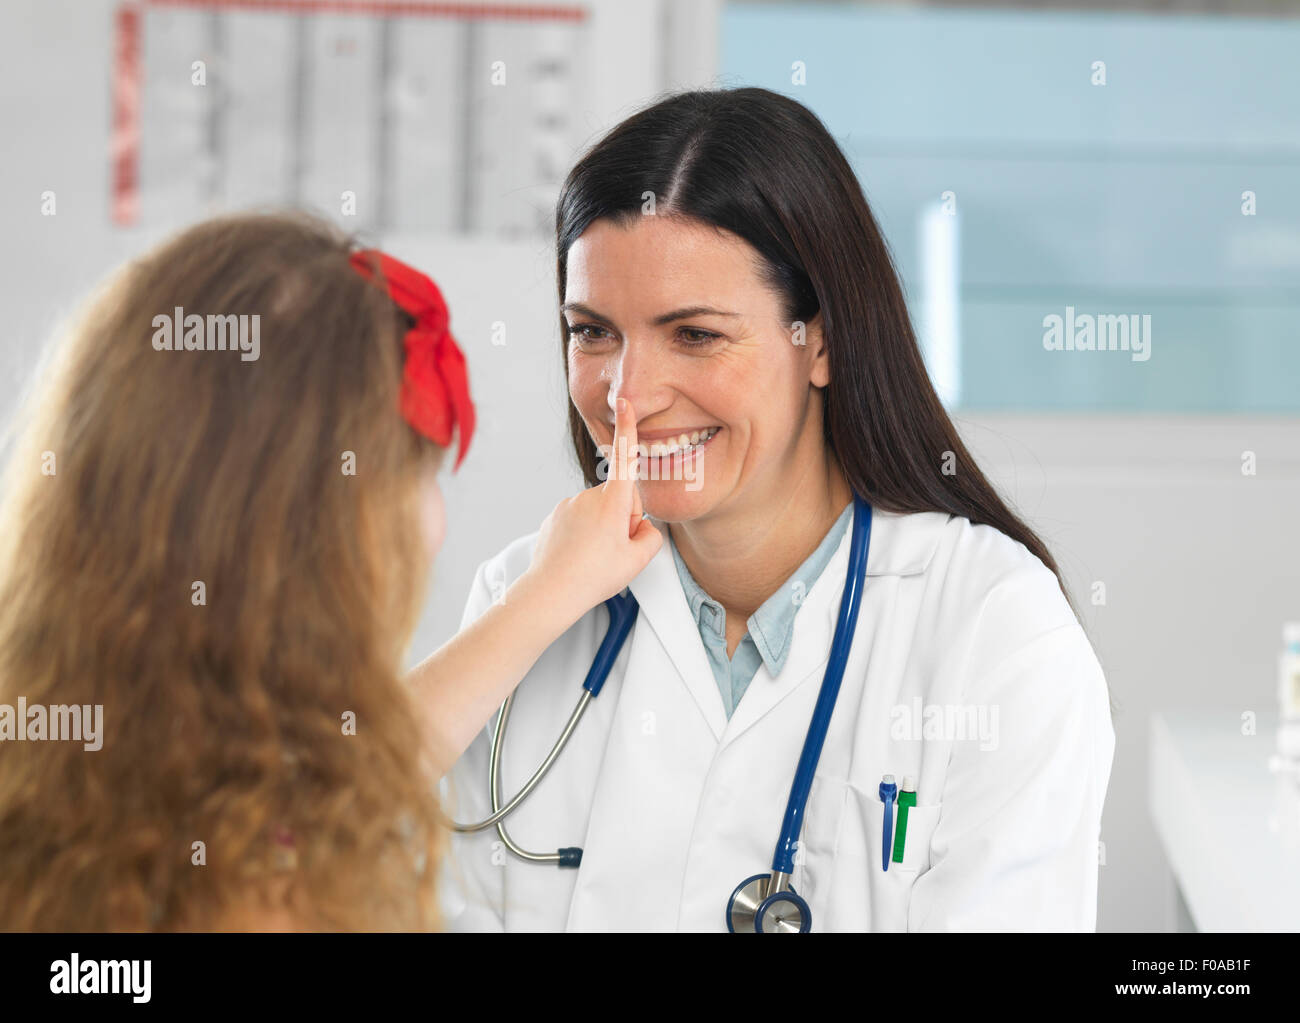 Verklebung mit jungen Mädchen während der Konsultation Arzt Stockfoto